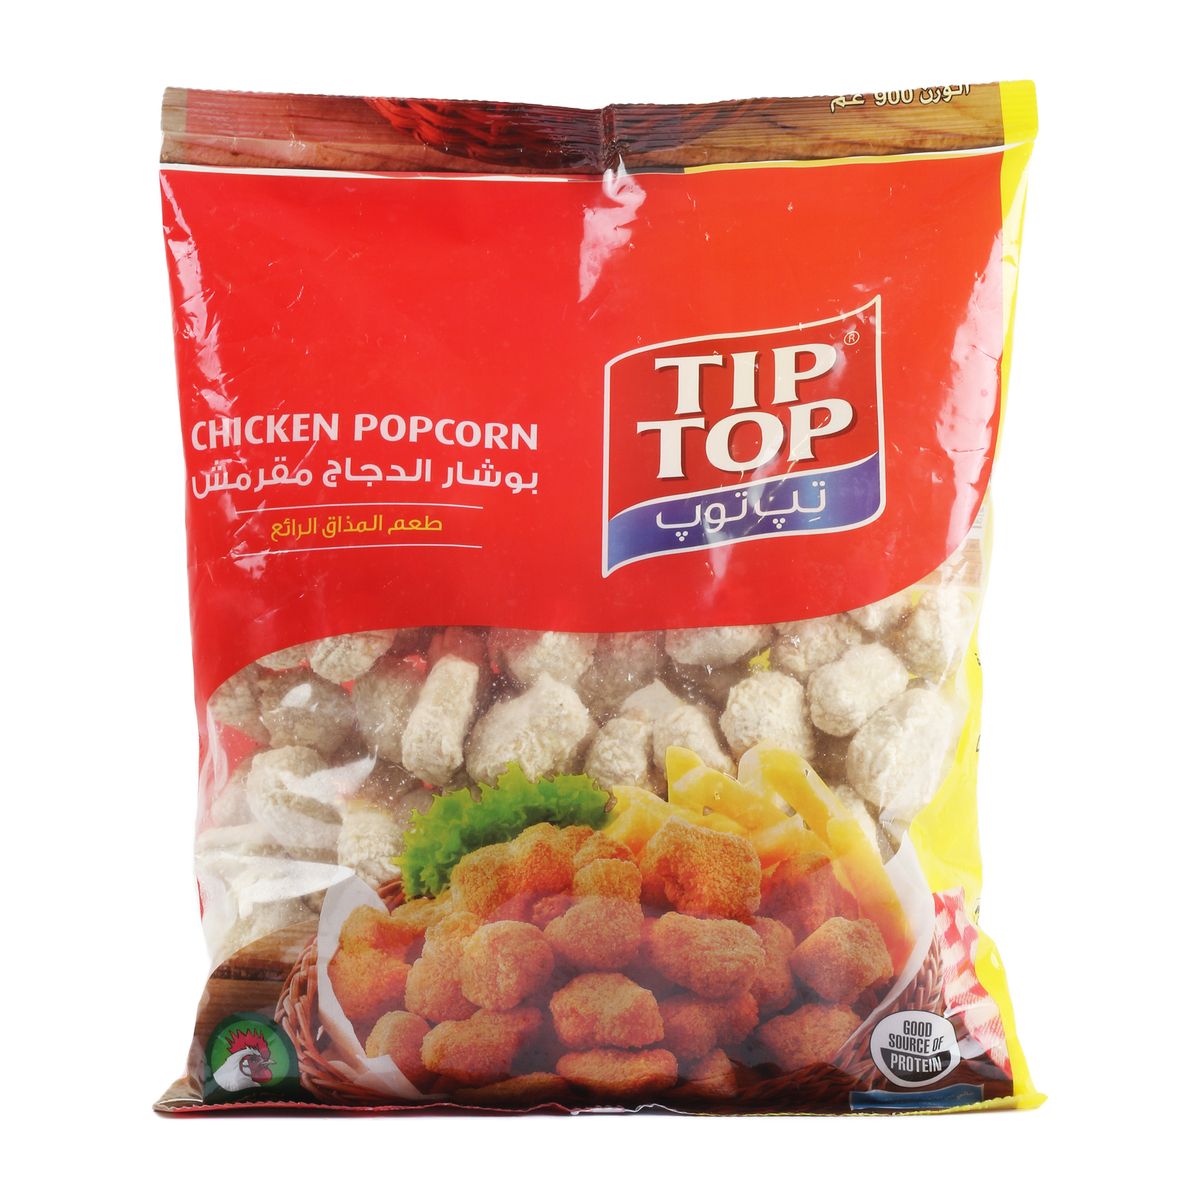 Tip Top Chicken Popcorn 900g